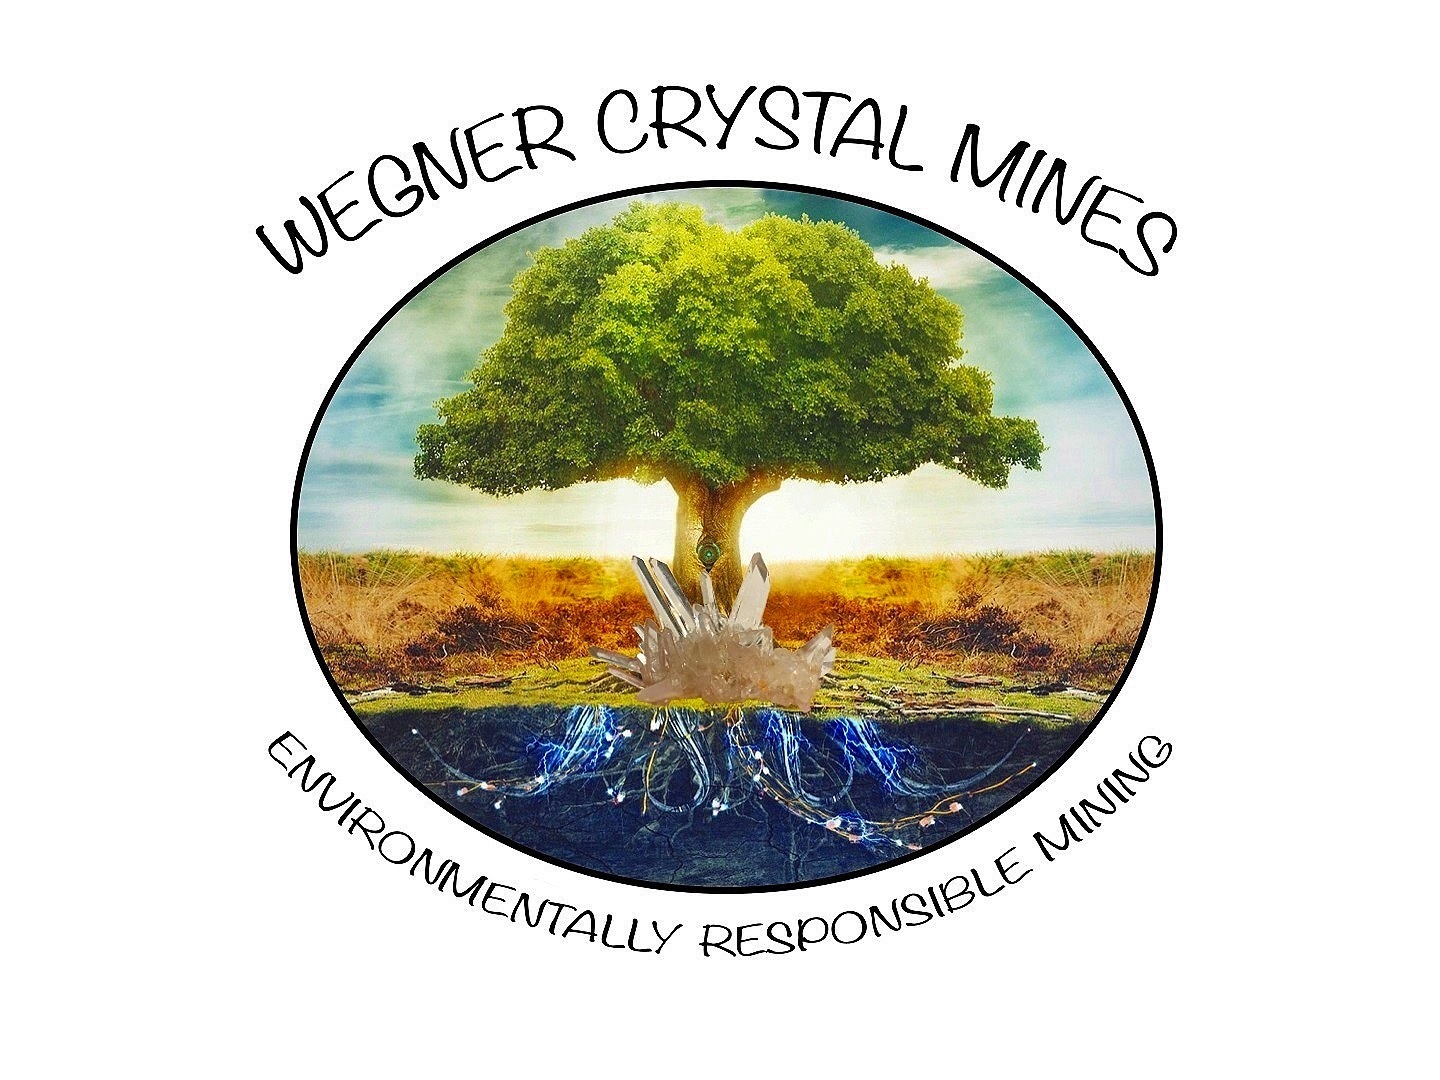 Wegner Quartz Crystal Mines